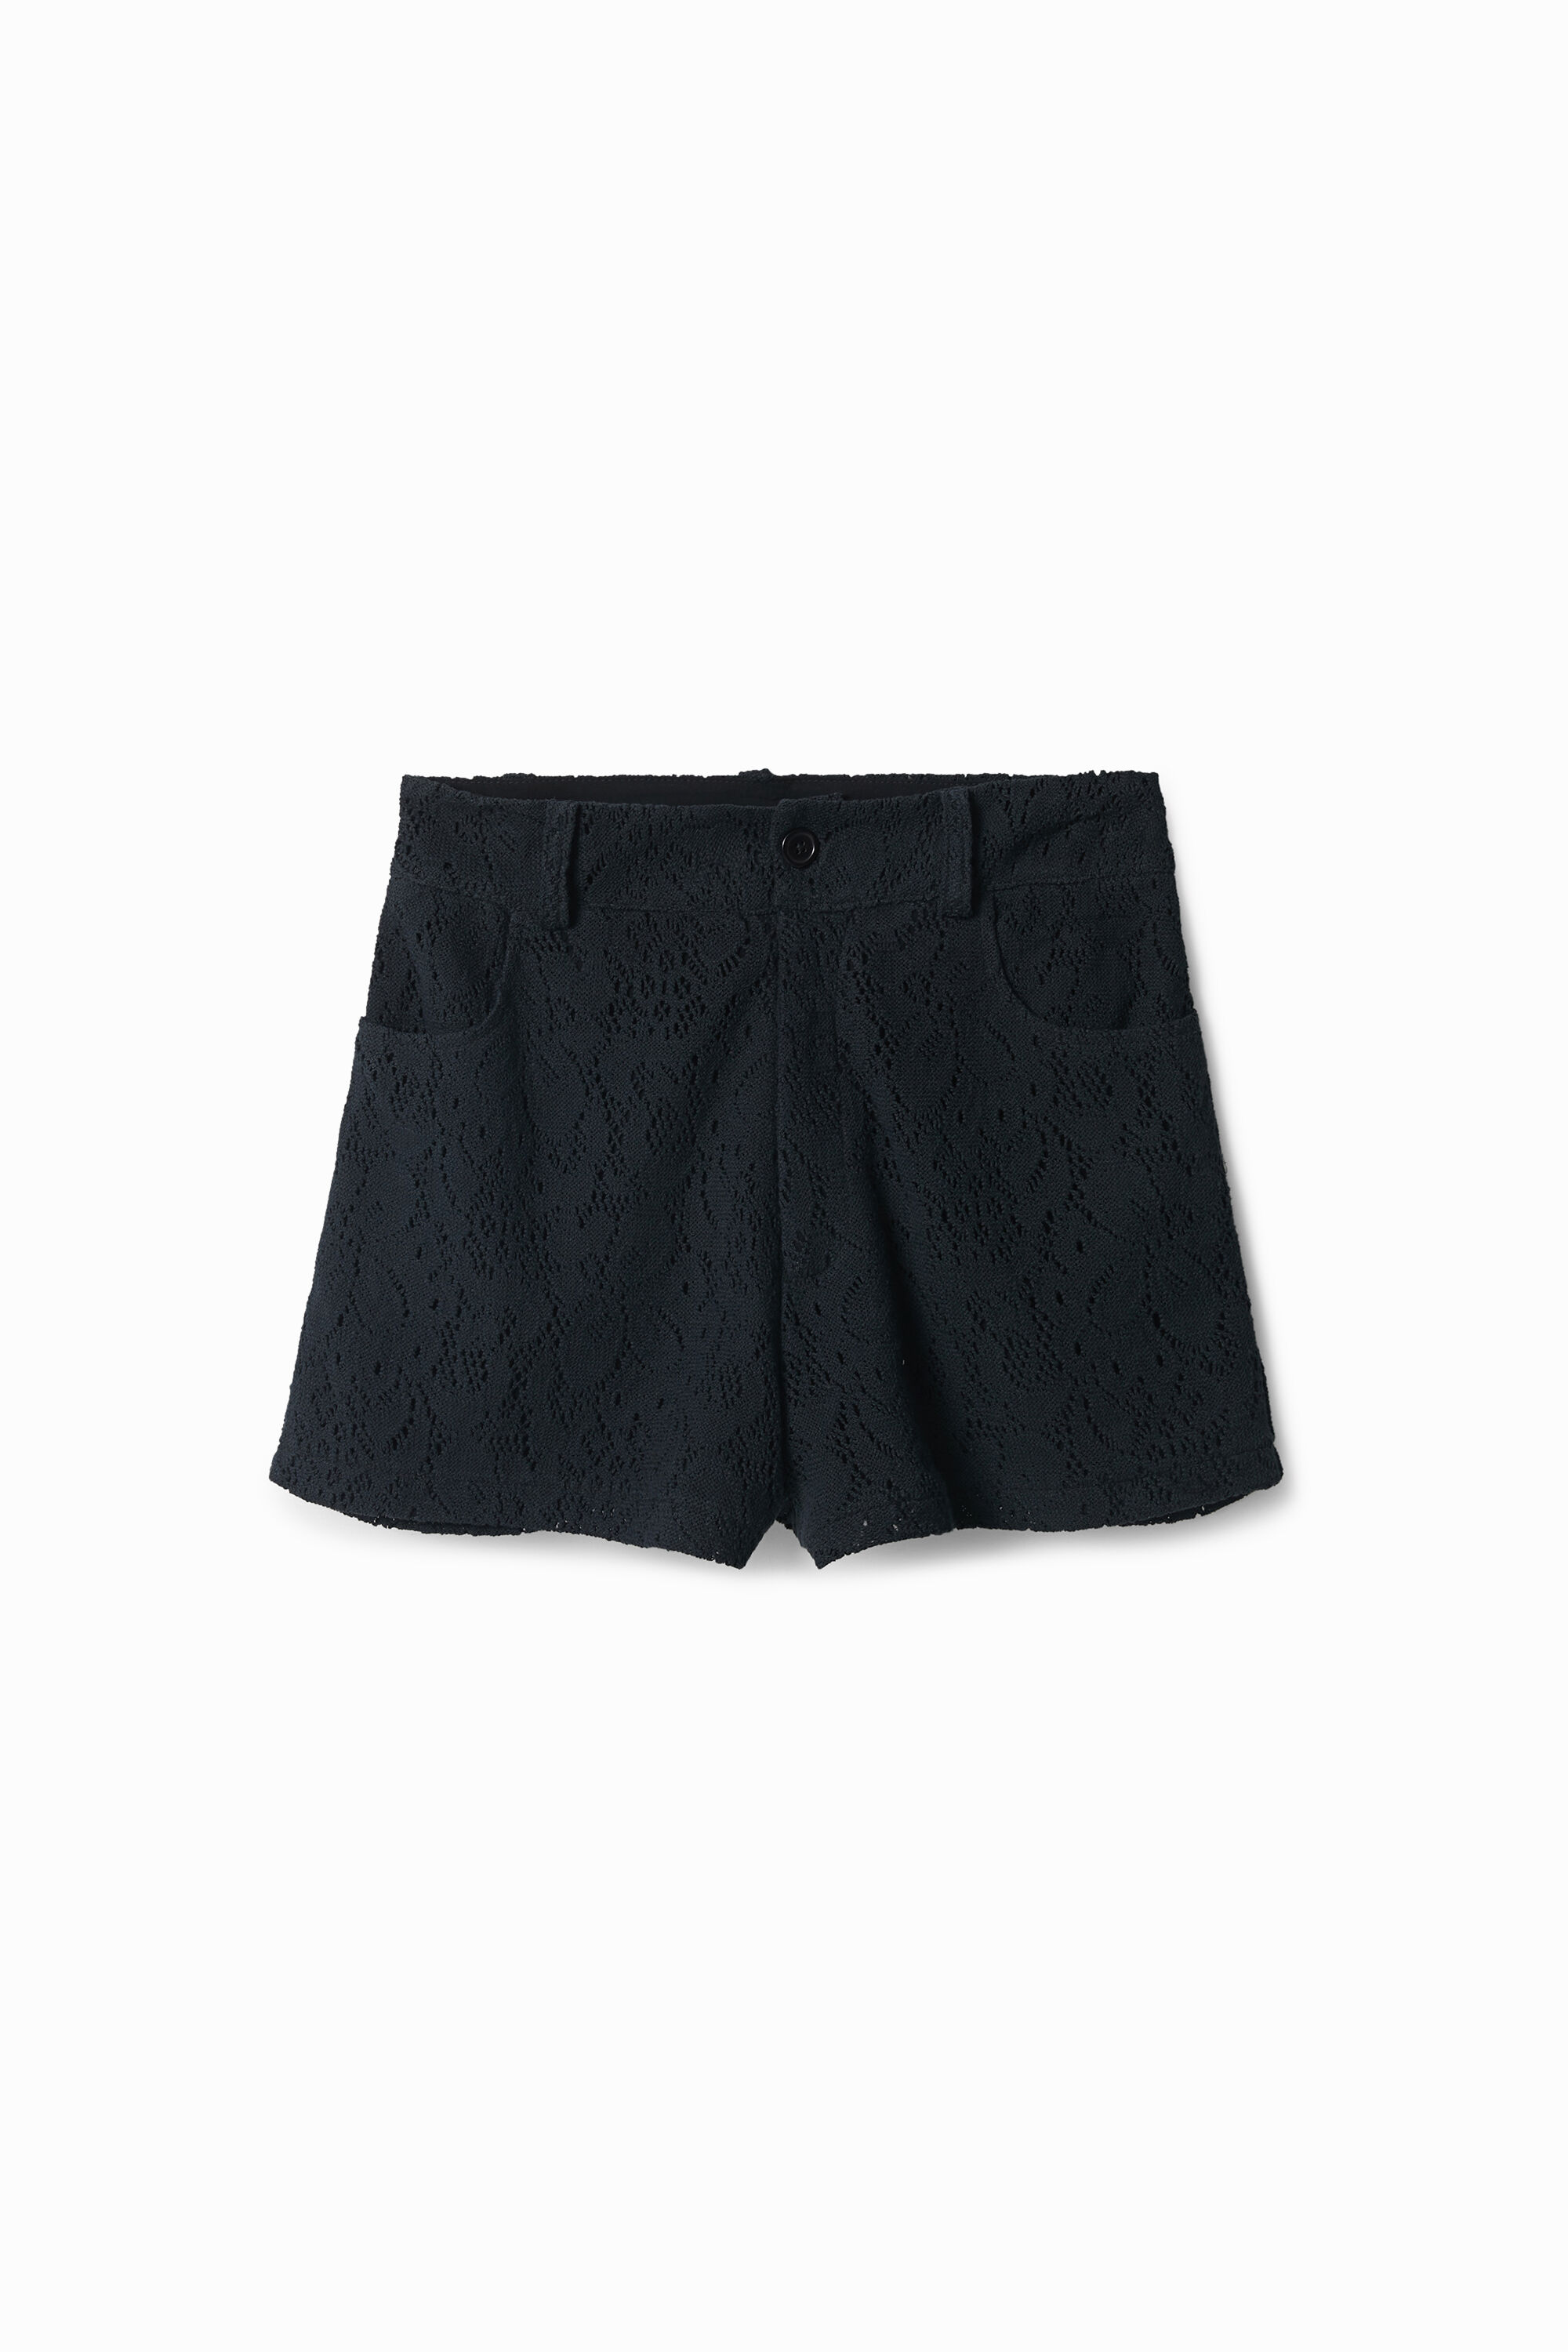 Chrochet shorts - BLACK - M